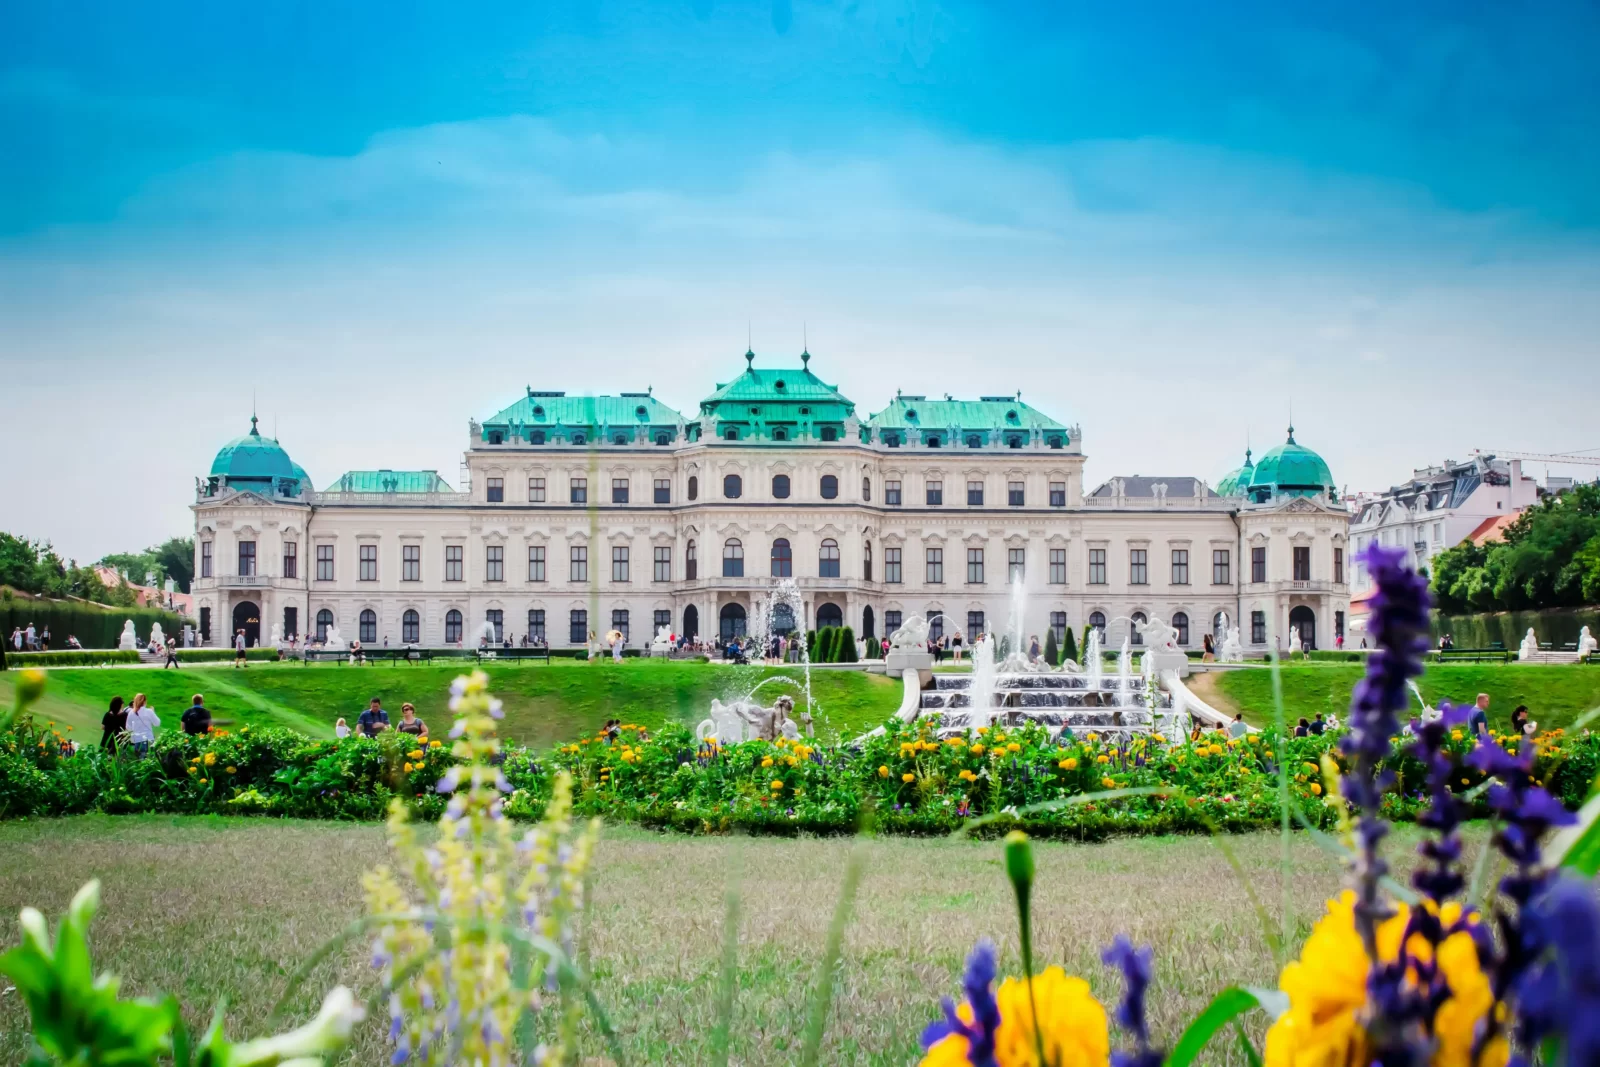 Castle Quiz Belvedere Palace, Austria